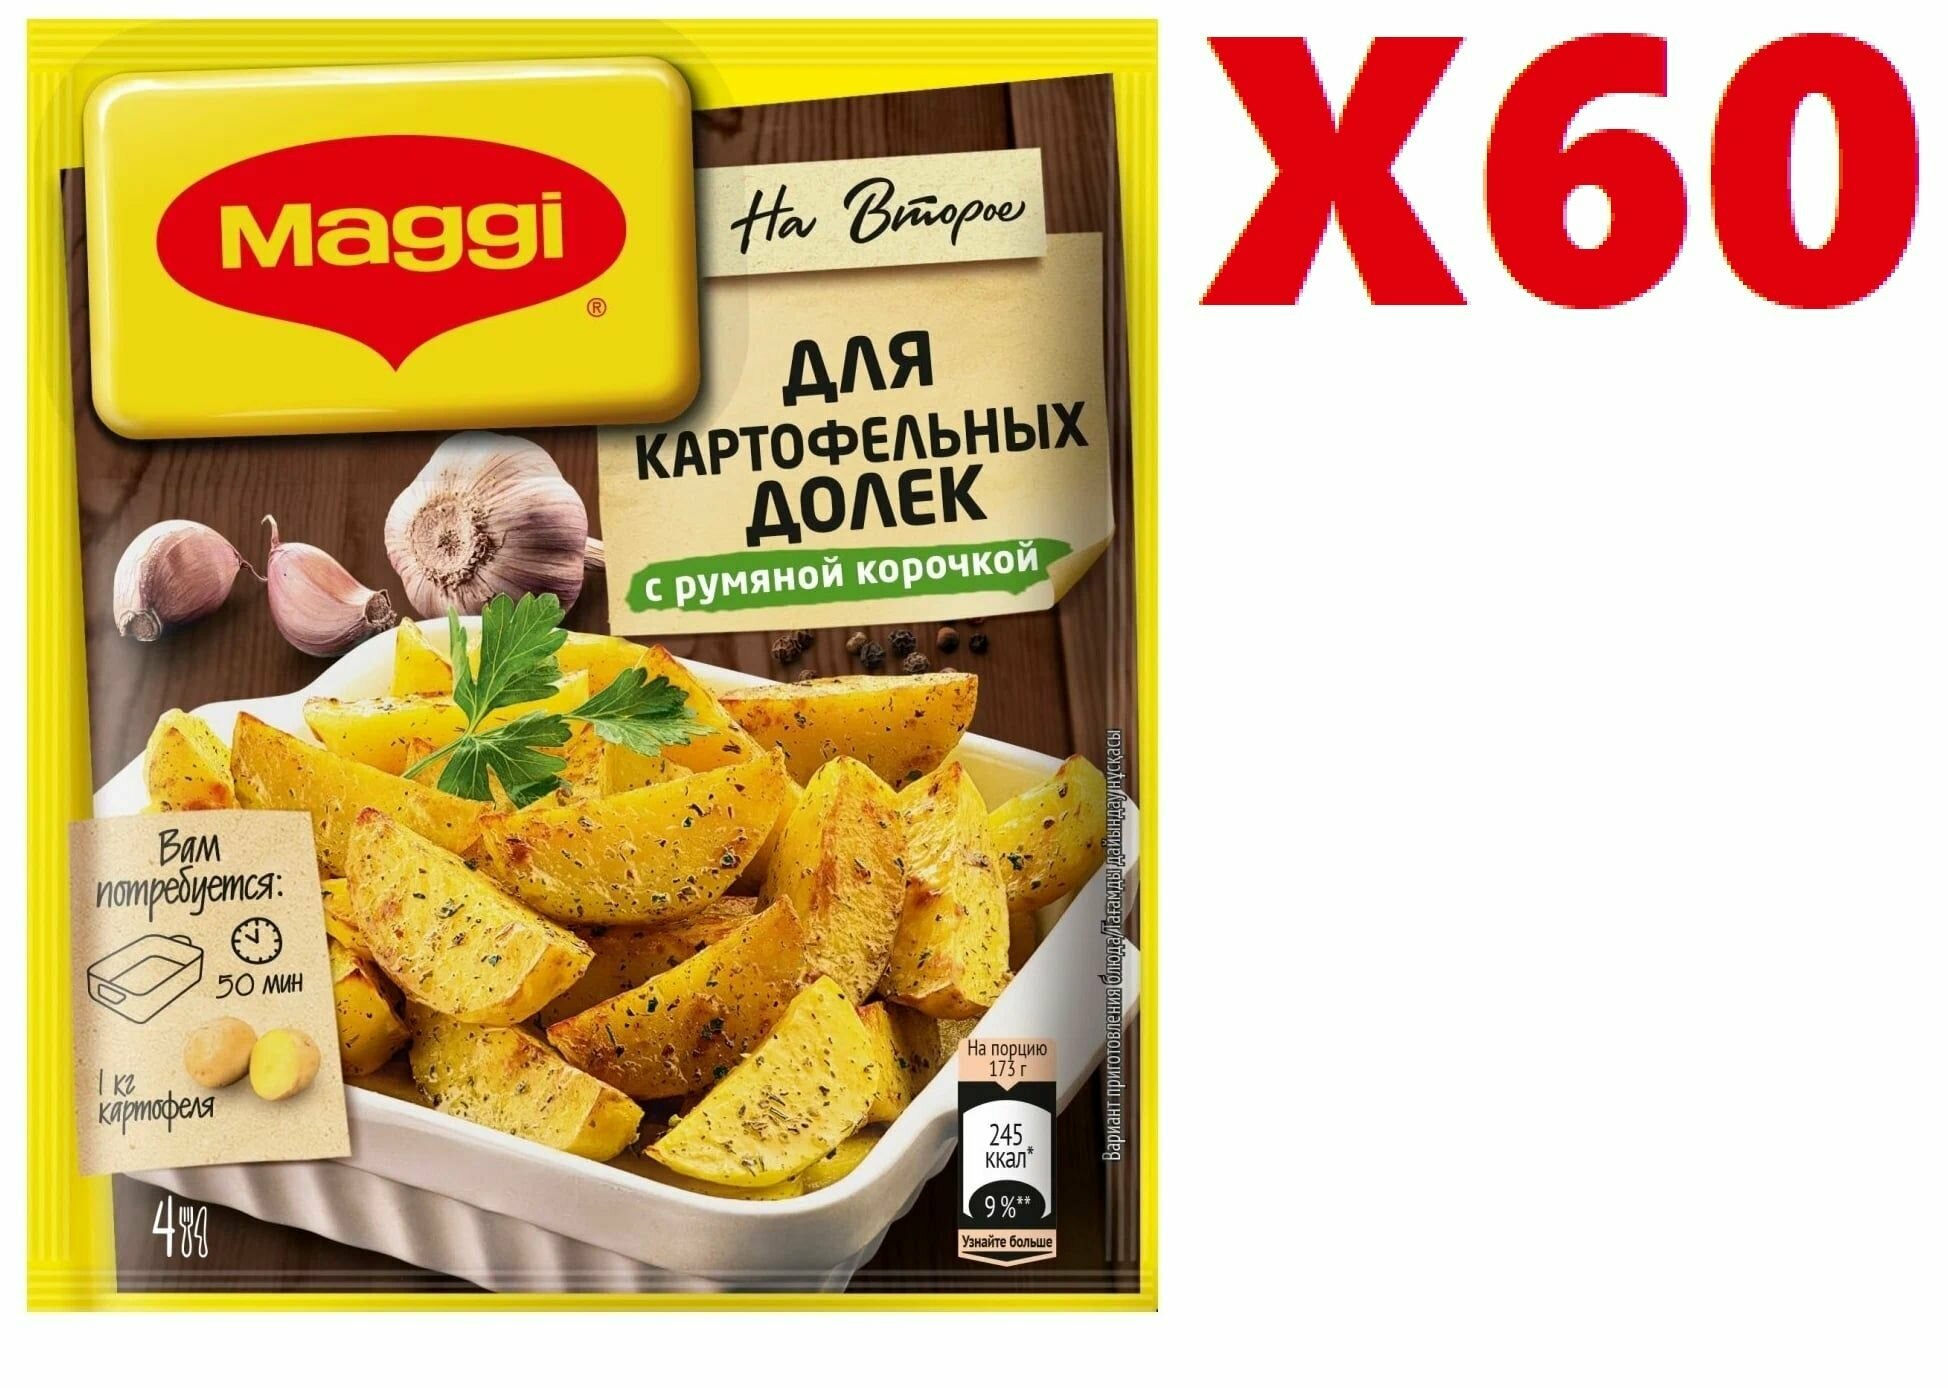 Приправа Maggi "На второе", для картофельных долек с румяной корочкой, 20г 60 шт